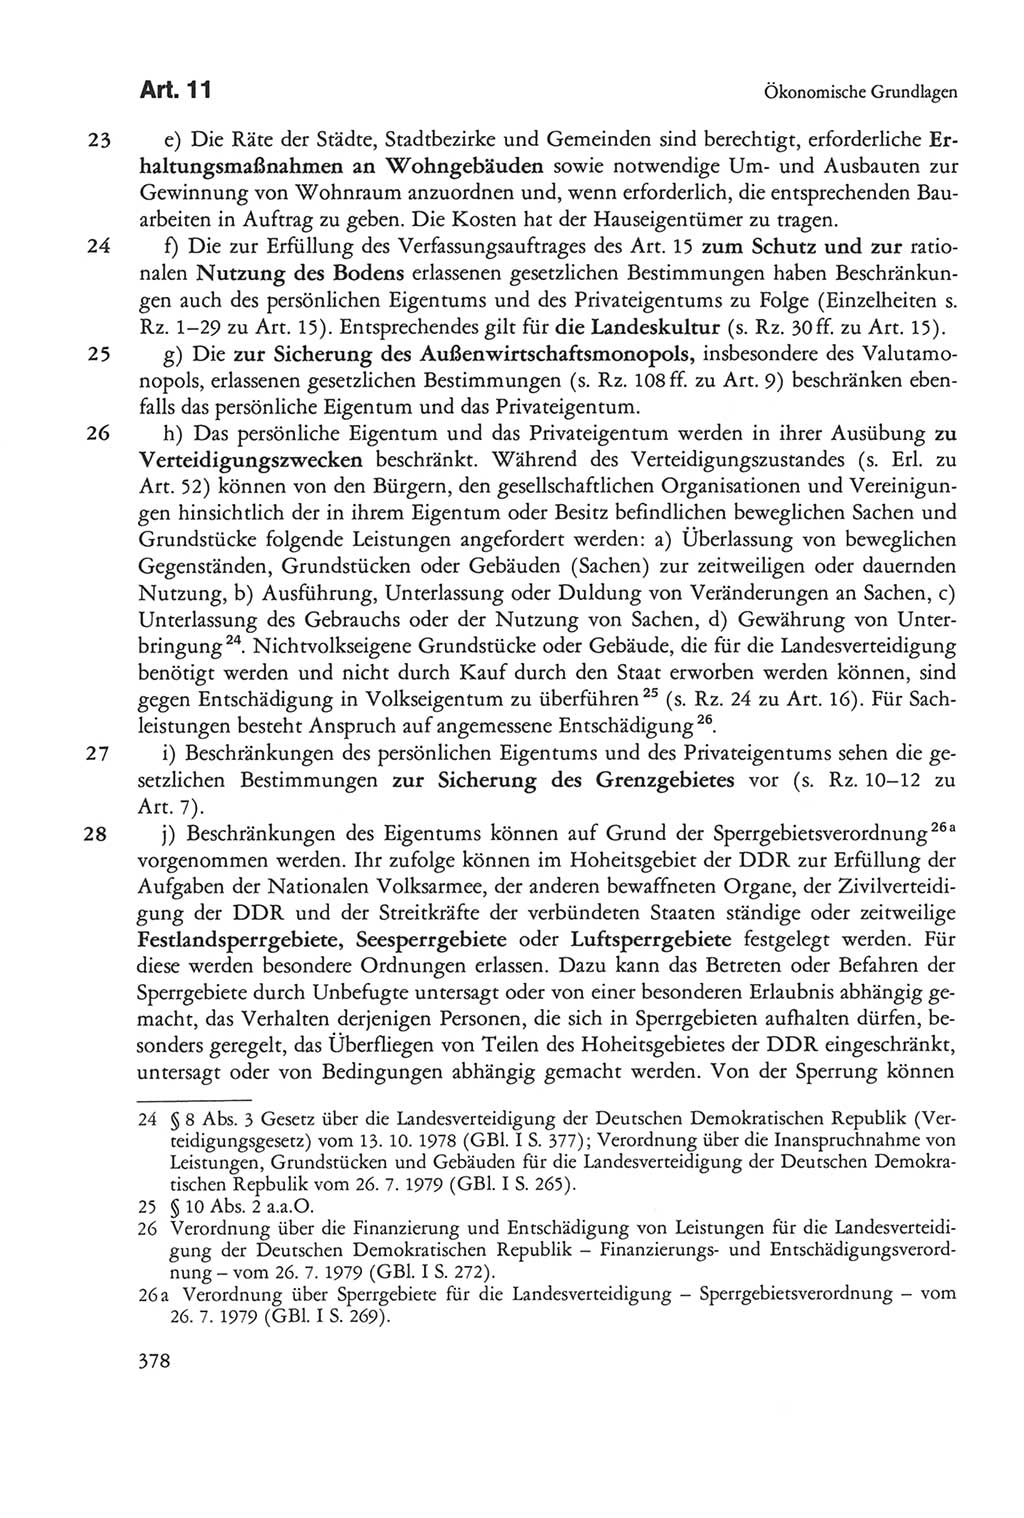 Die sozialistische Verfassung der Deutschen Demokratischen Republik (DDR), Kommentar 1982, Seite 378 (Soz. Verf. DDR Komm. 1982, S. 378)